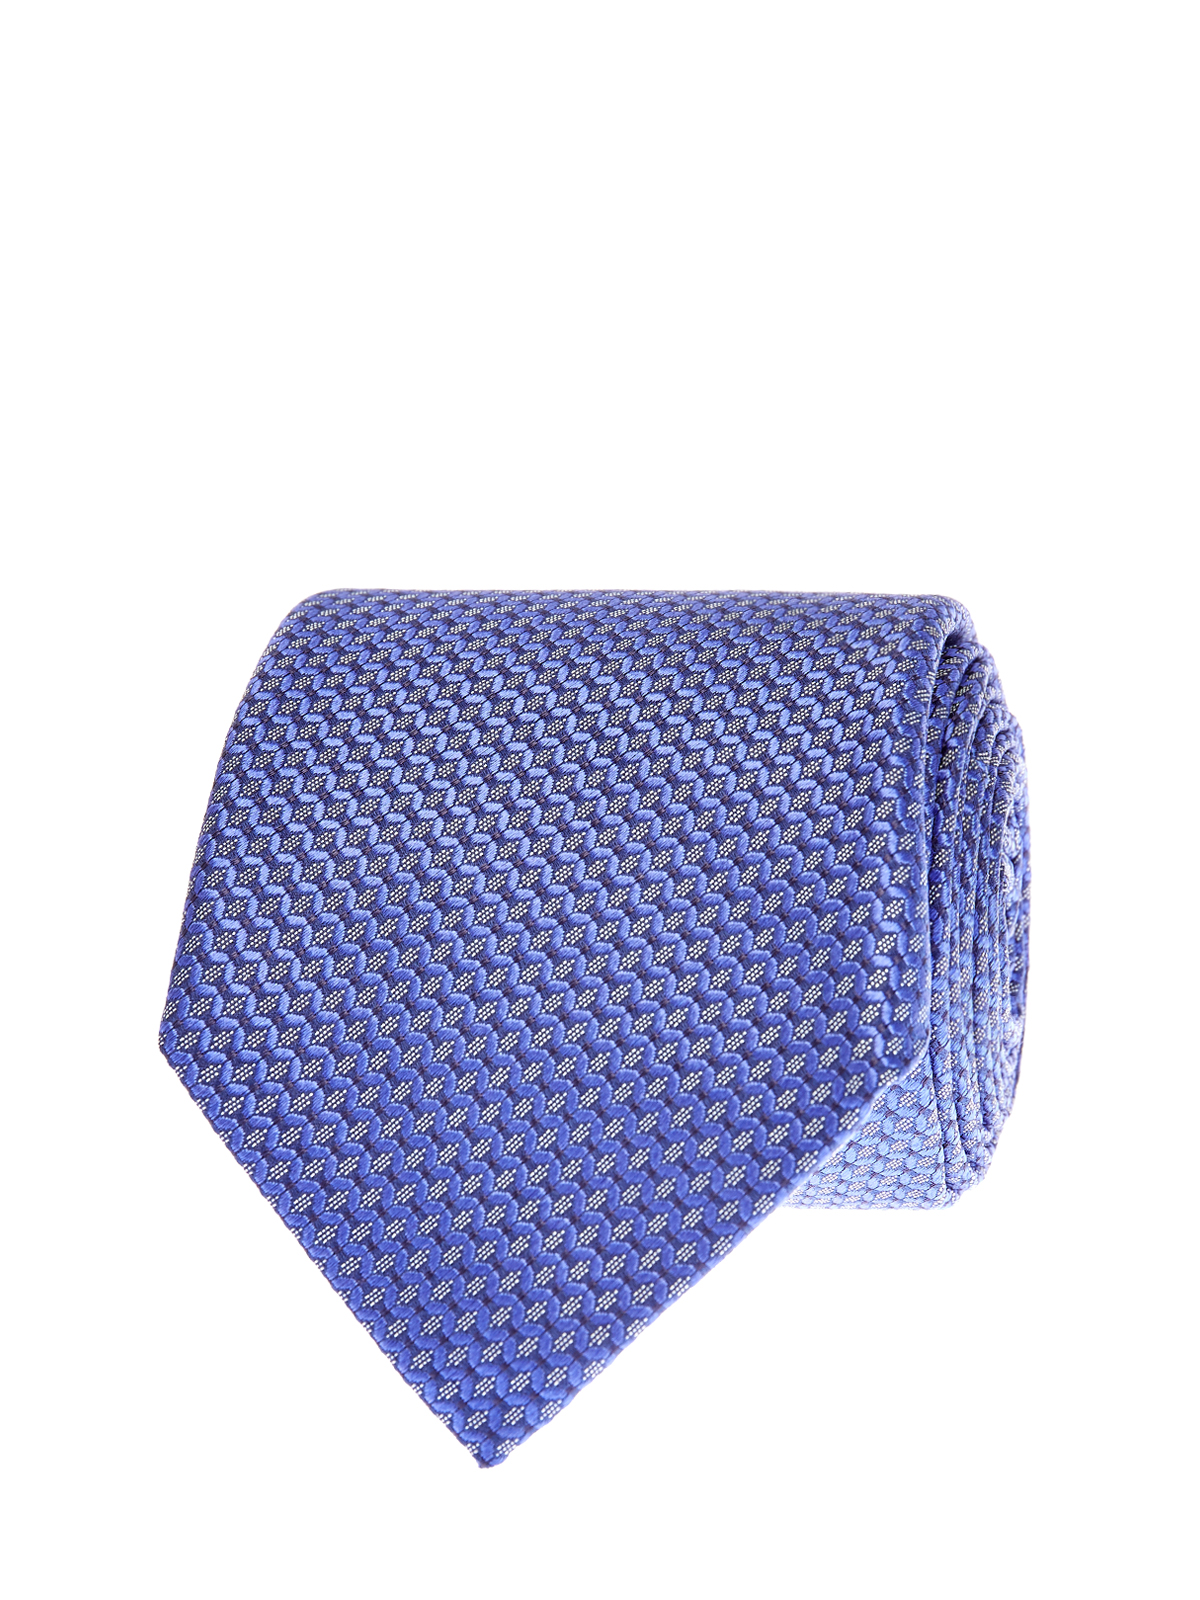 Шелковый галстук с жаккардовым принтом и логотипом CANALI, цвет синий, размер M - фото 1